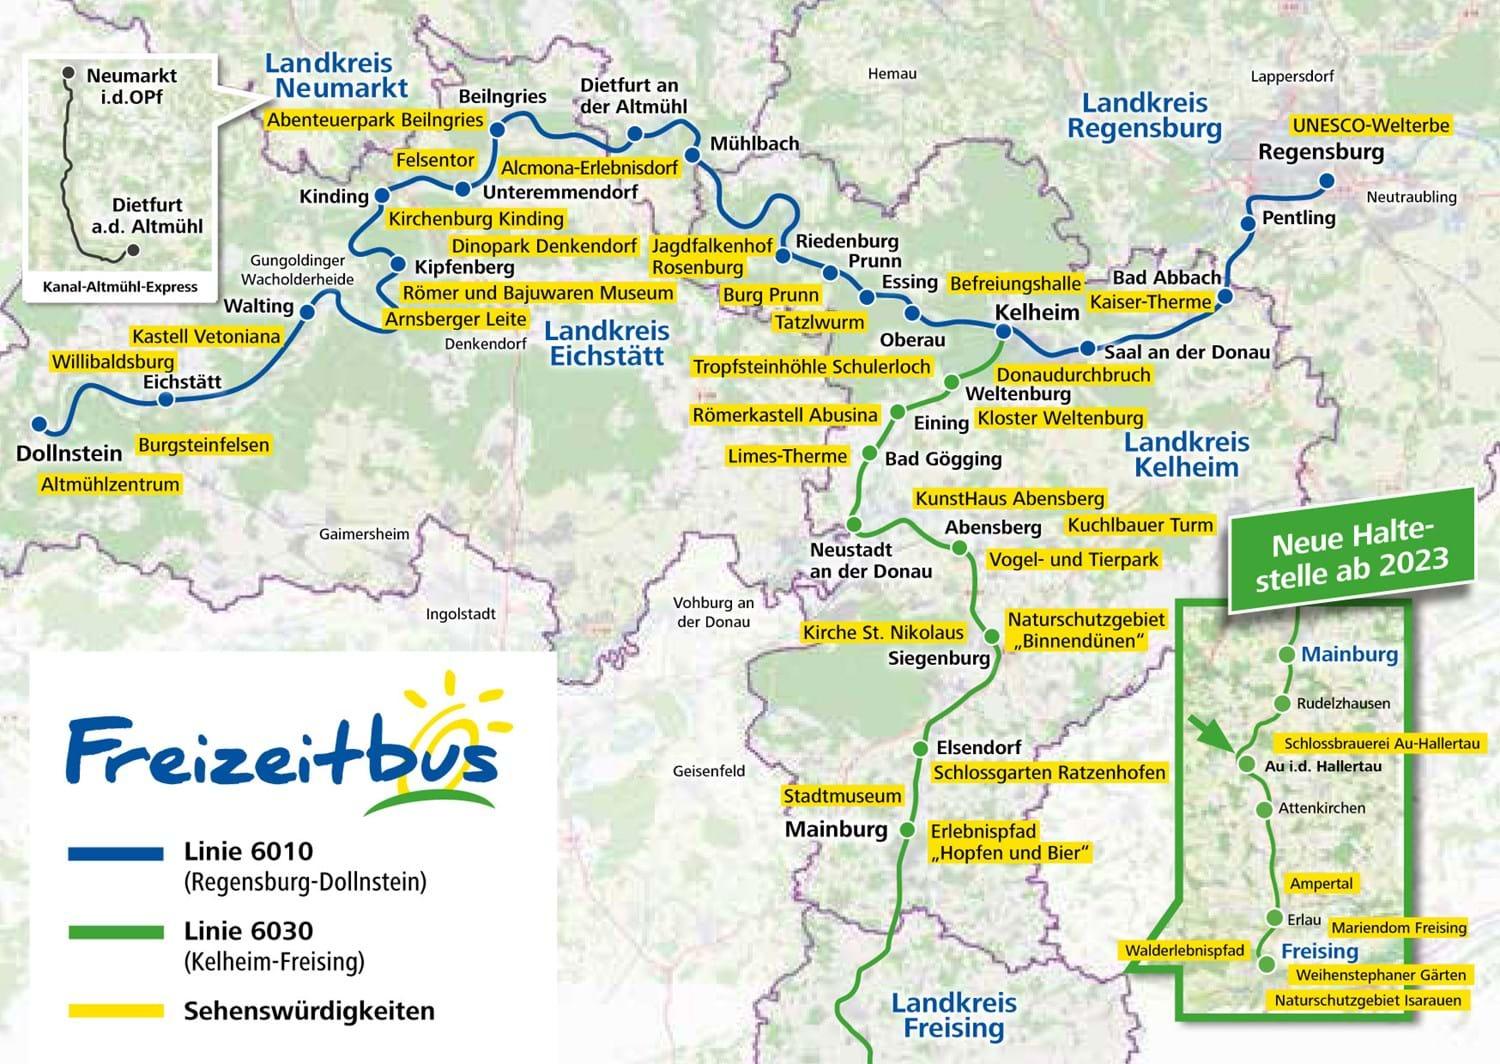 Übersichtskarte Freizeitbus 2023. Quelle https://www.landkreis-kelheim.de/tourismus-kultur/freizeitbus/fahrplaene/